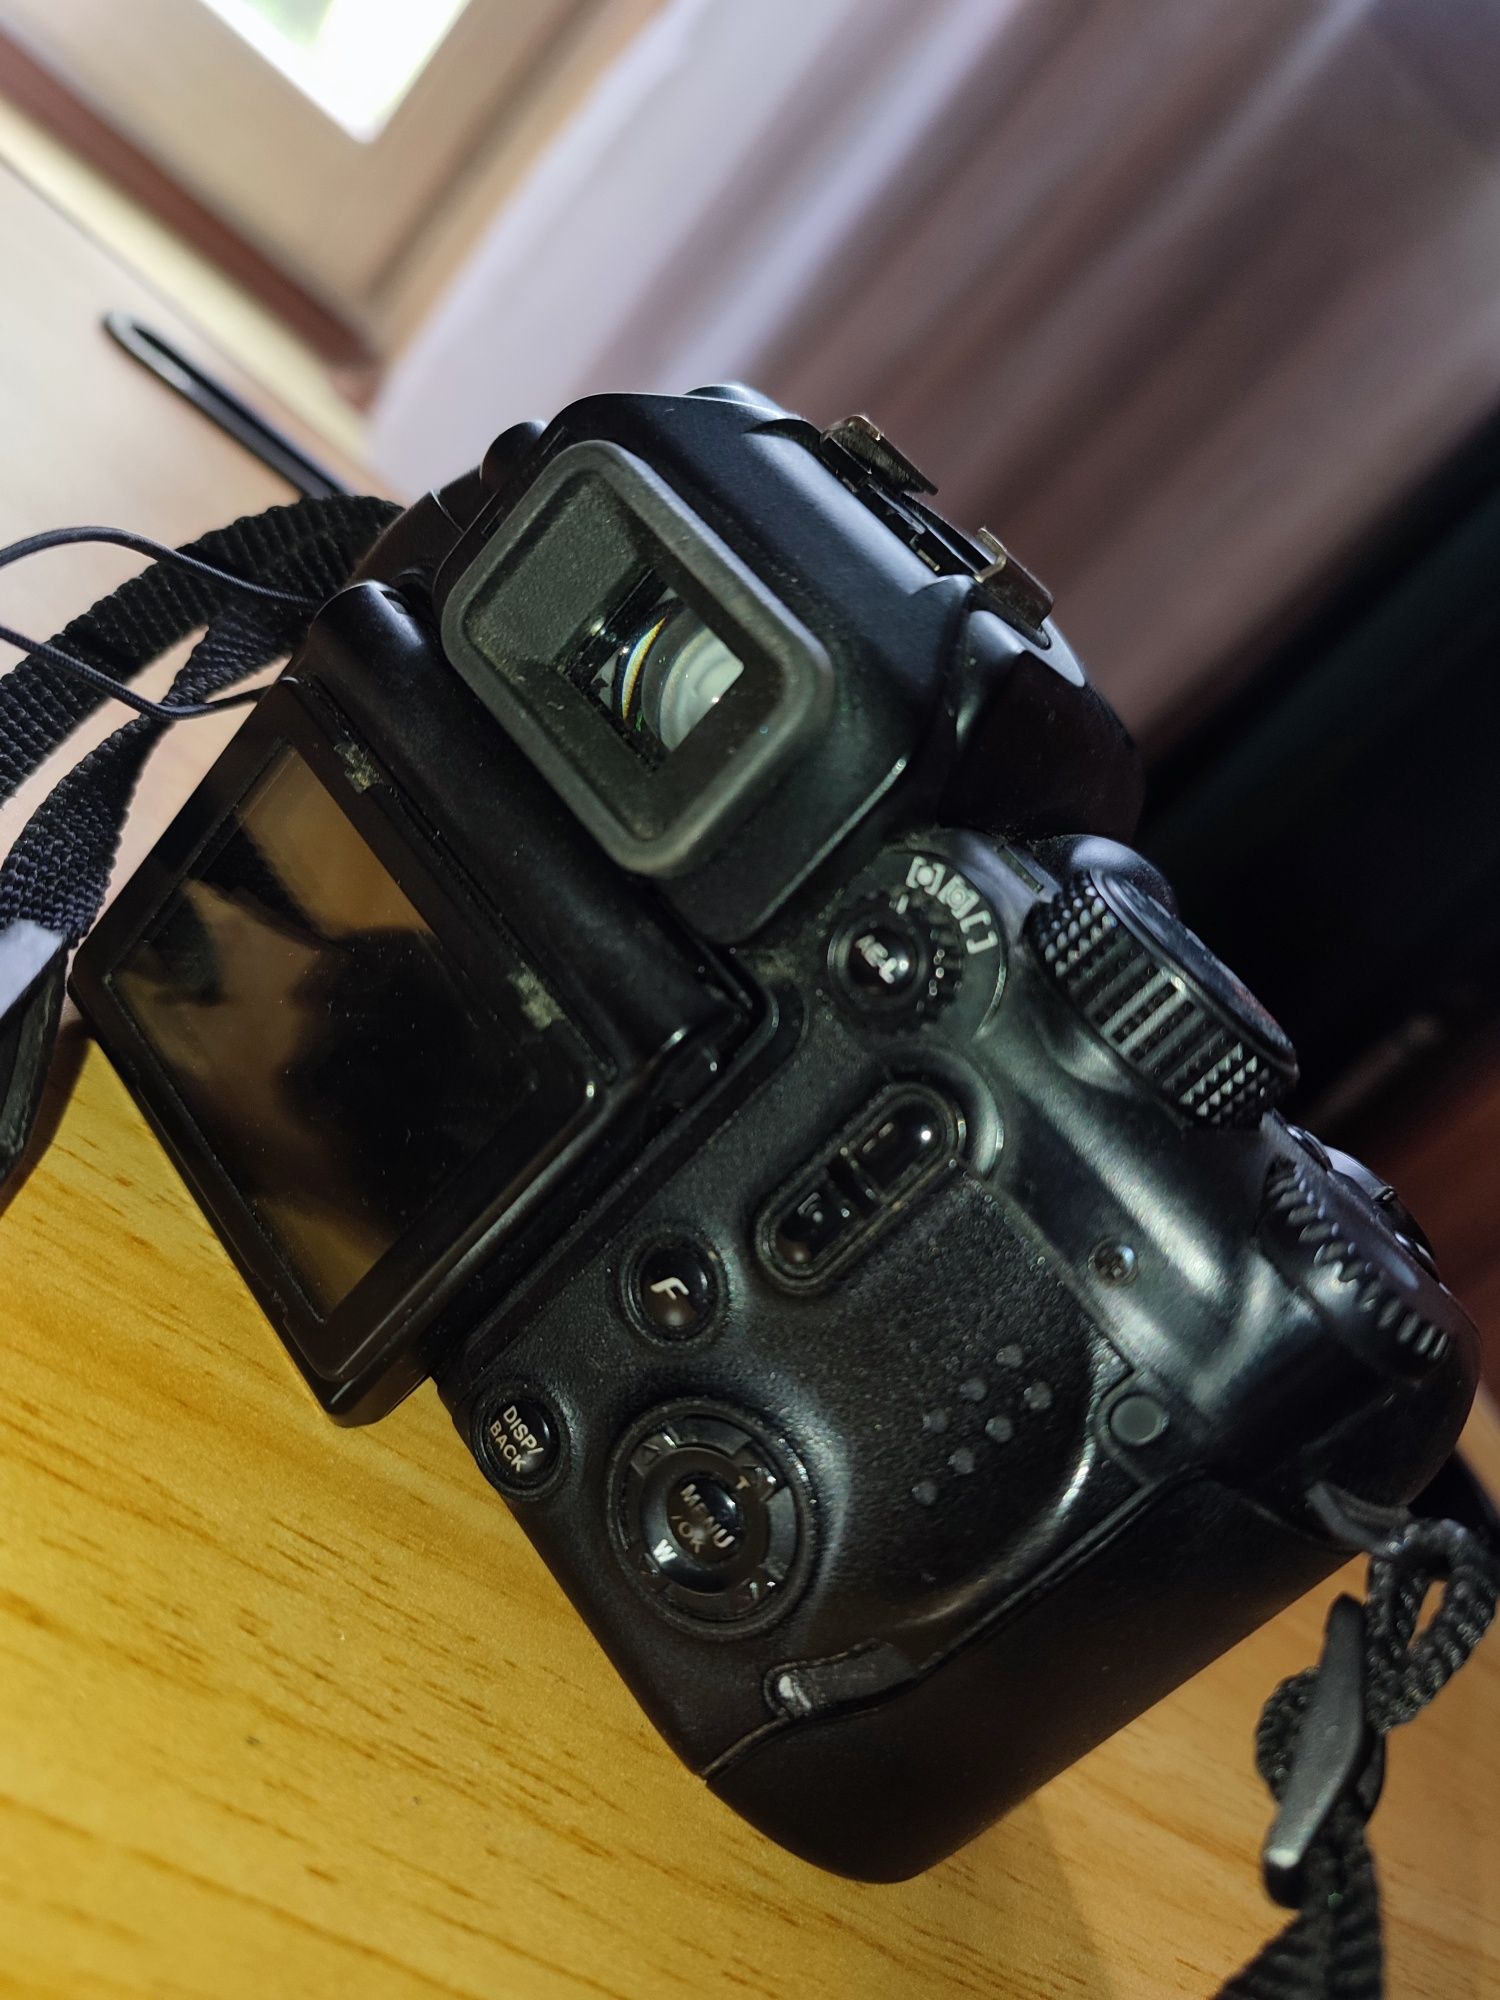 Fujifilm finepix S9600 digital camera 28-300 mm